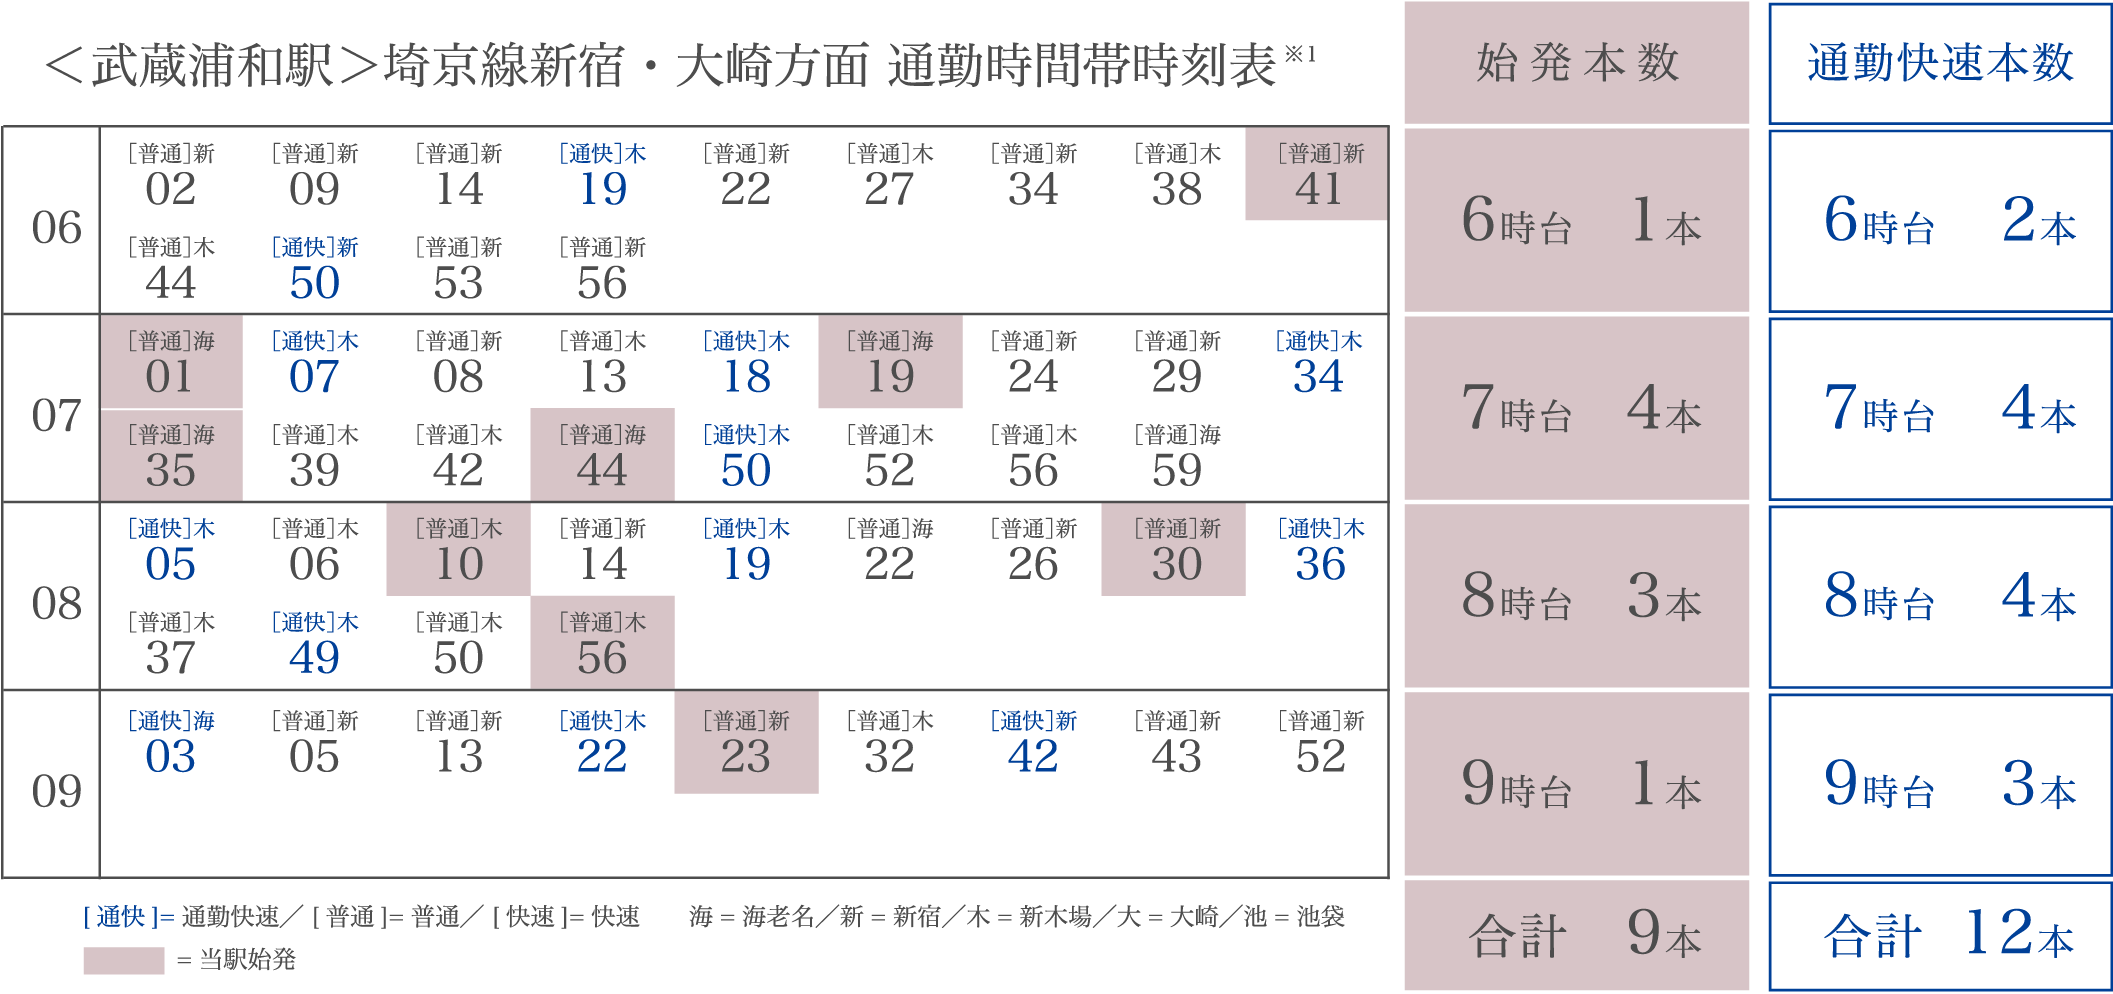 ＜武蔵浦和駅＞埼京線新宿・大崎方面 通勤時間帯時刻表